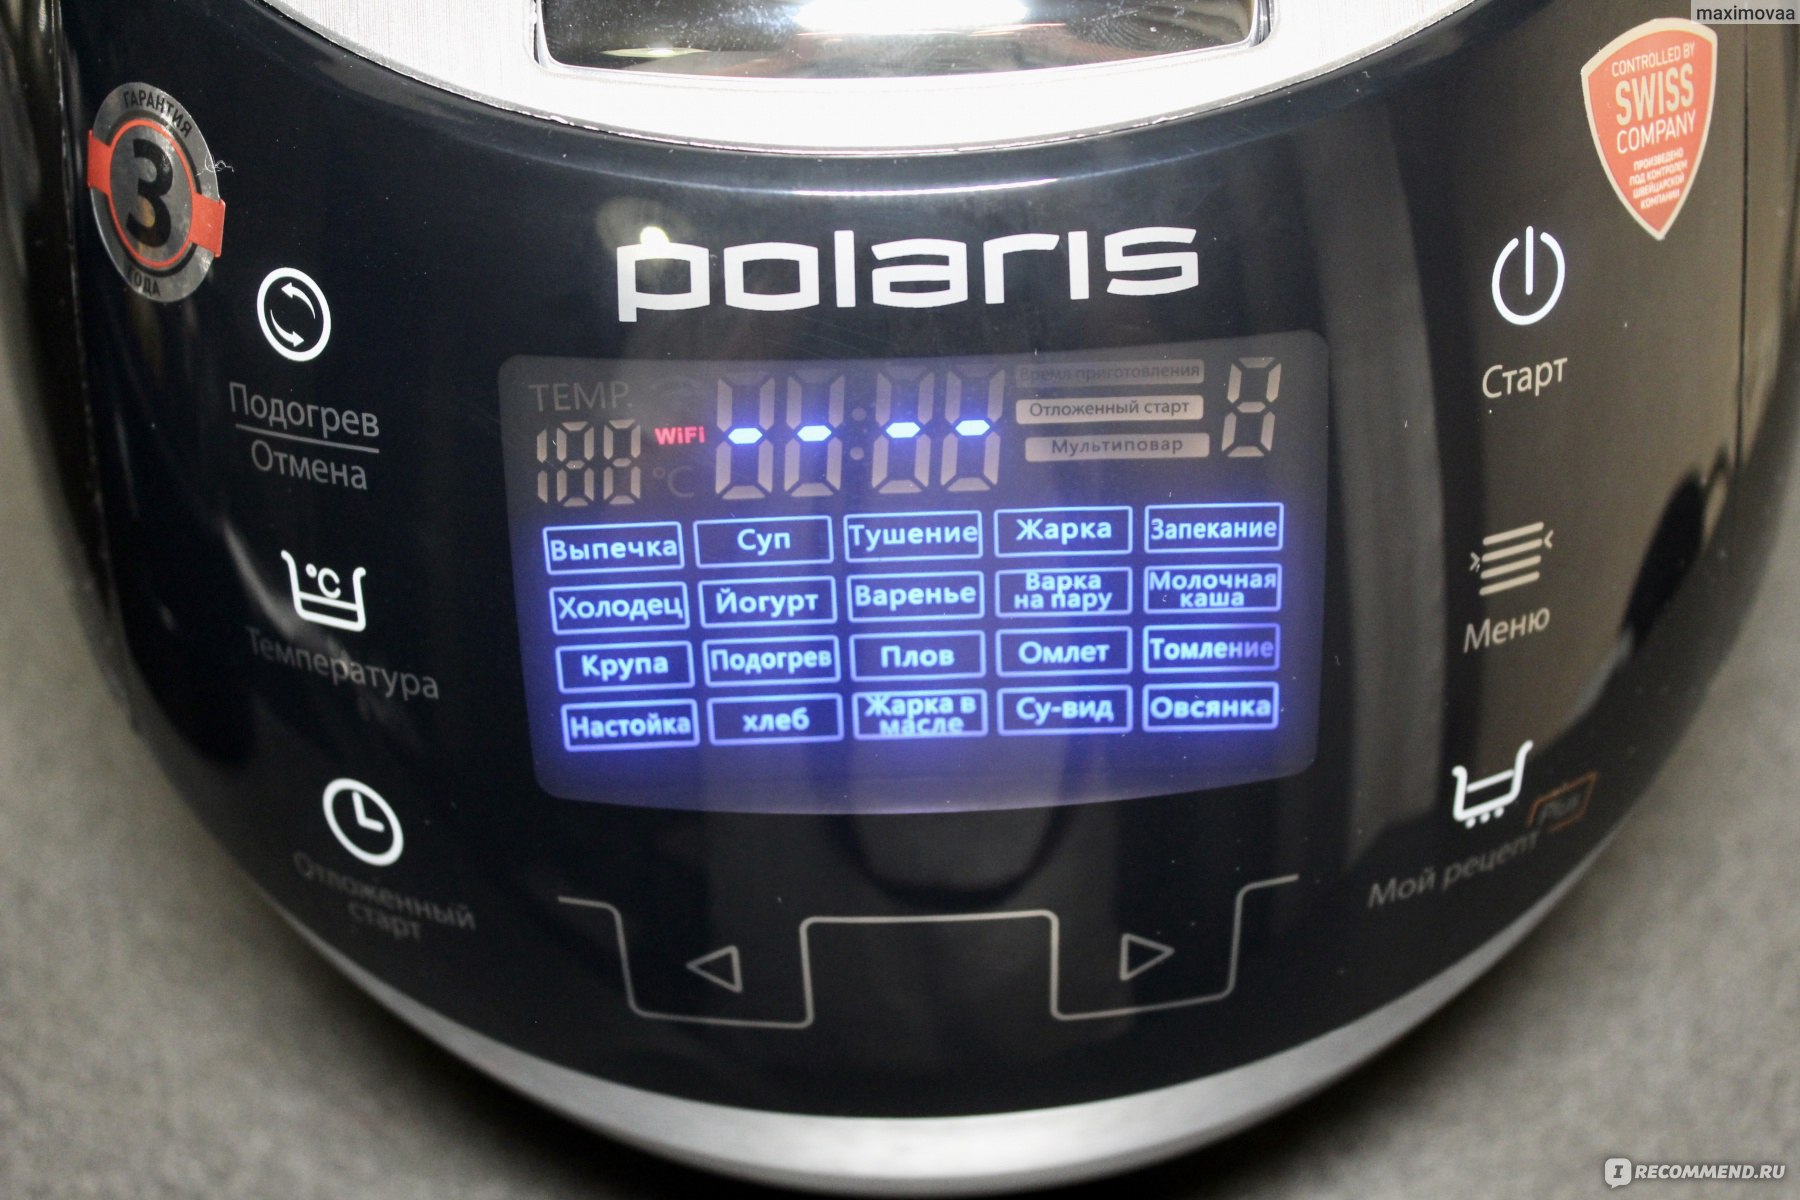 Ультиварка Polaris PMC 5030 Wi-Fi IQ Home отзвав